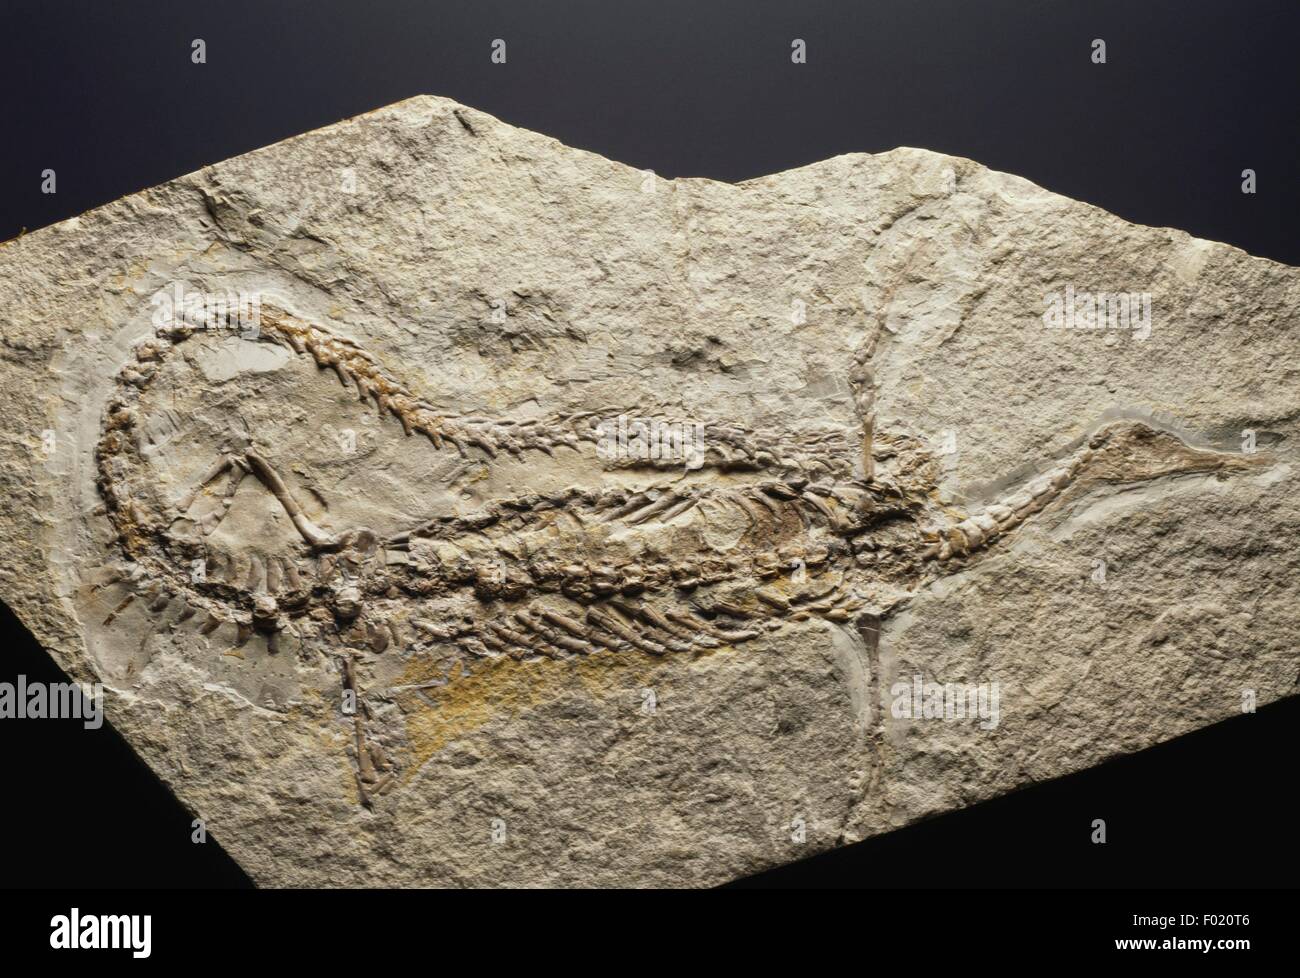 Fossil des Stereosternum Tumidum, Reptilien, unteren Perm in Brasilien gefunden. Stockfoto